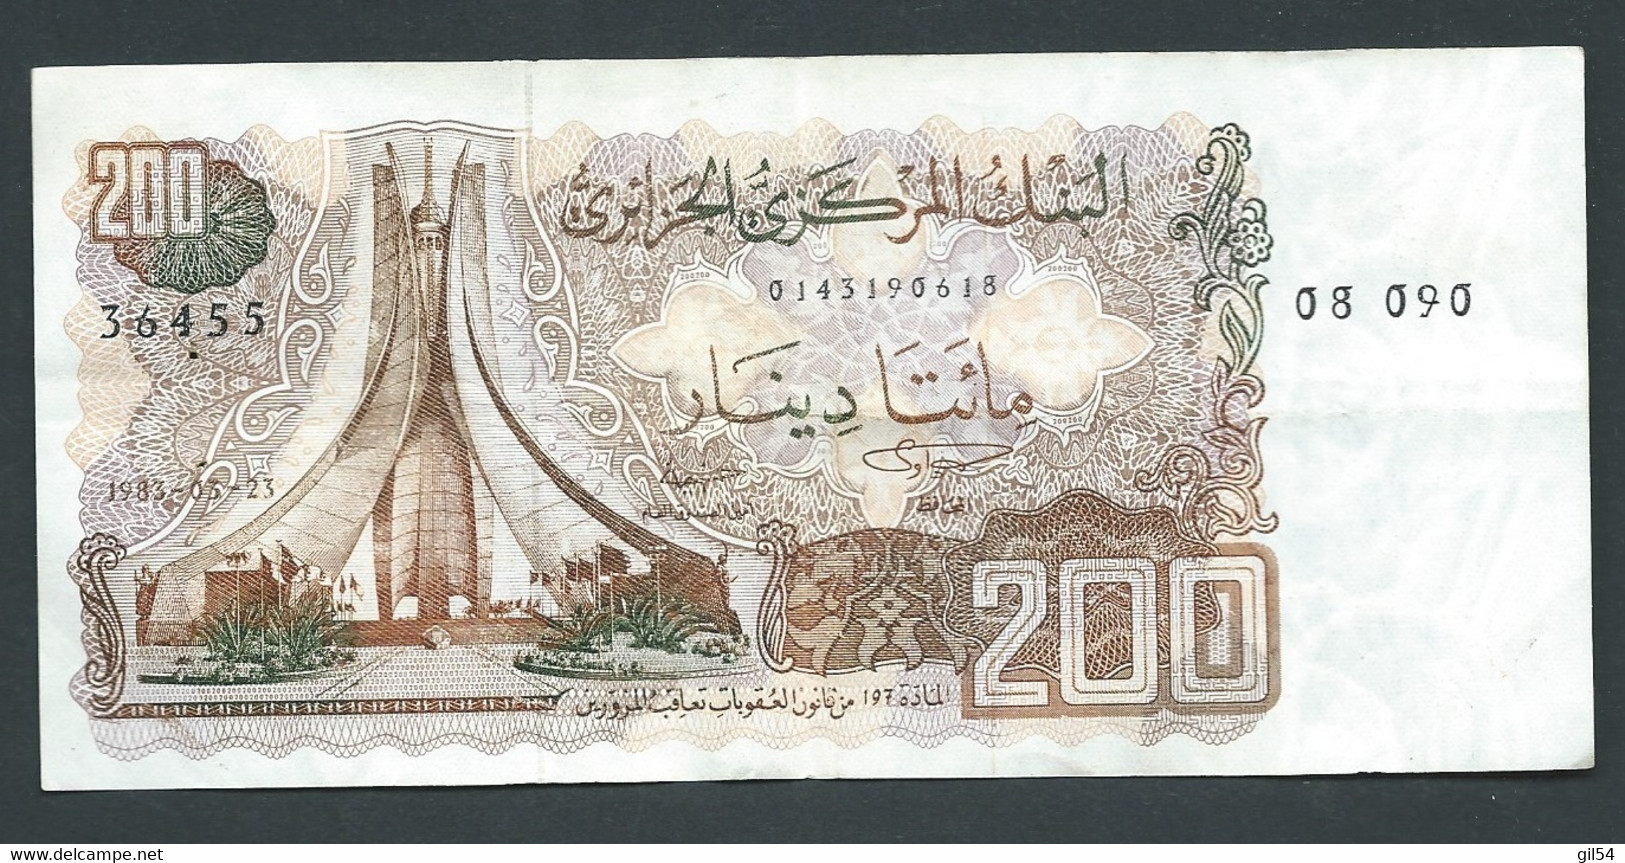 Billet, Algérie, 200 Dinars, 1983, 1983-03-23 -v  -N°:  36455 - 08090  -  Laura 7405 - Argelia